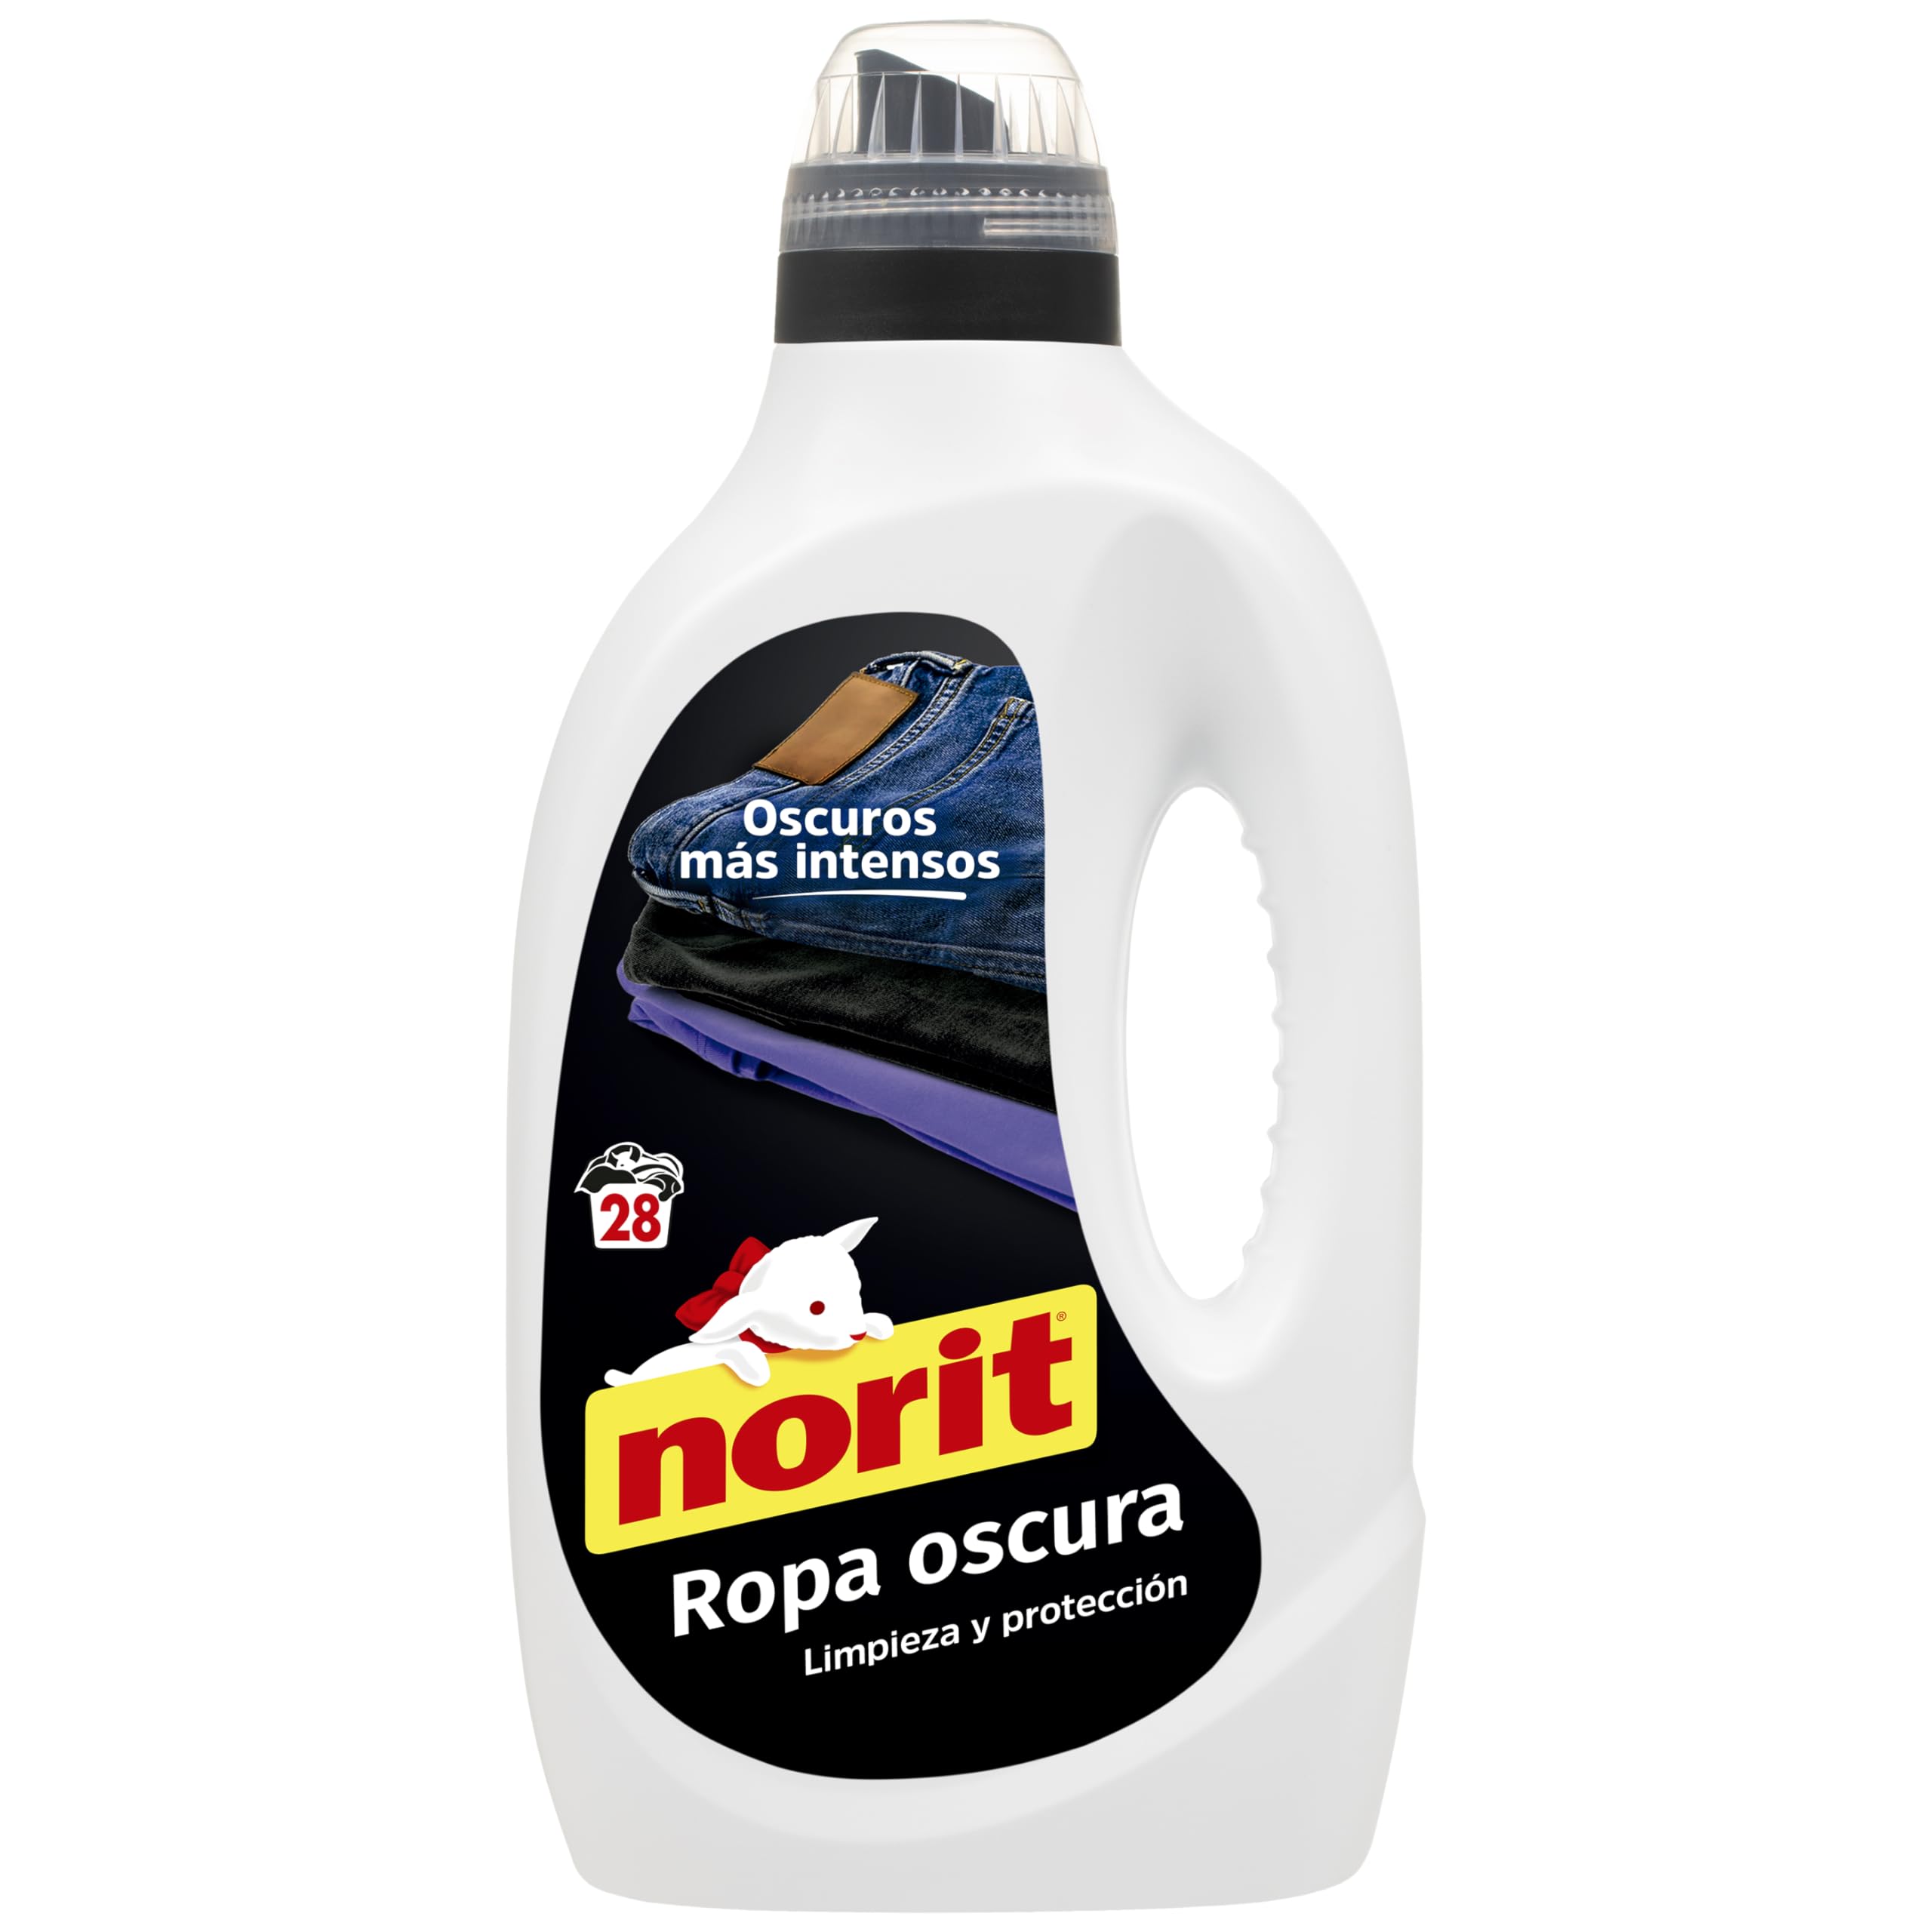 Norit - Flüssigwaschmittel für dunkle und schwarze Wäsche, 28 Waschgänge, 1500 ml